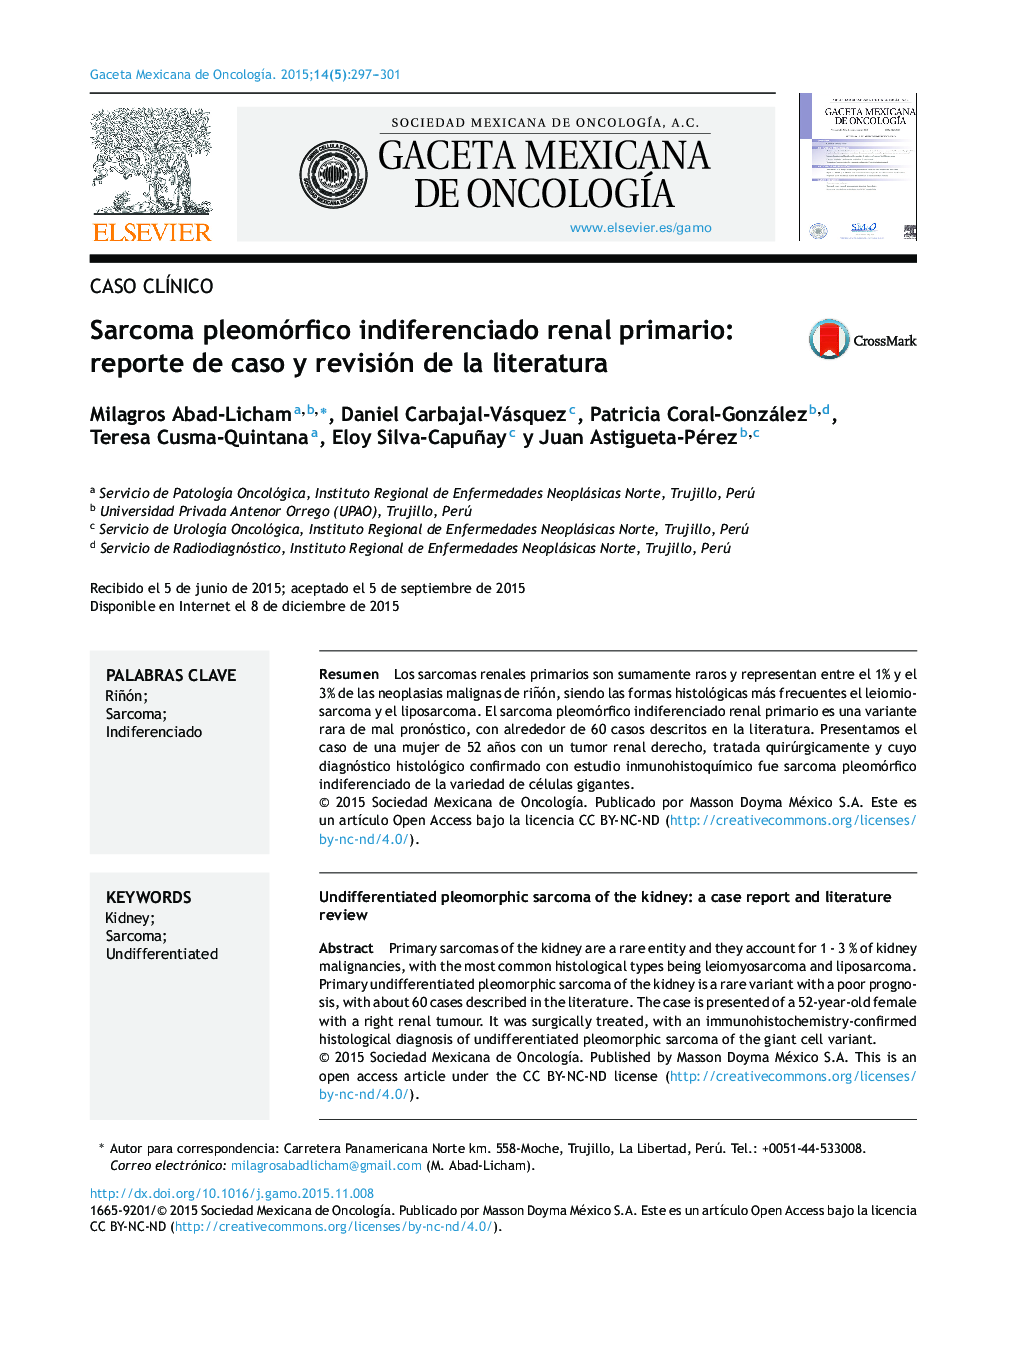 Sarcoma pleomórfico indiferenciado renal primario: reporte de caso y revisión de la literatura